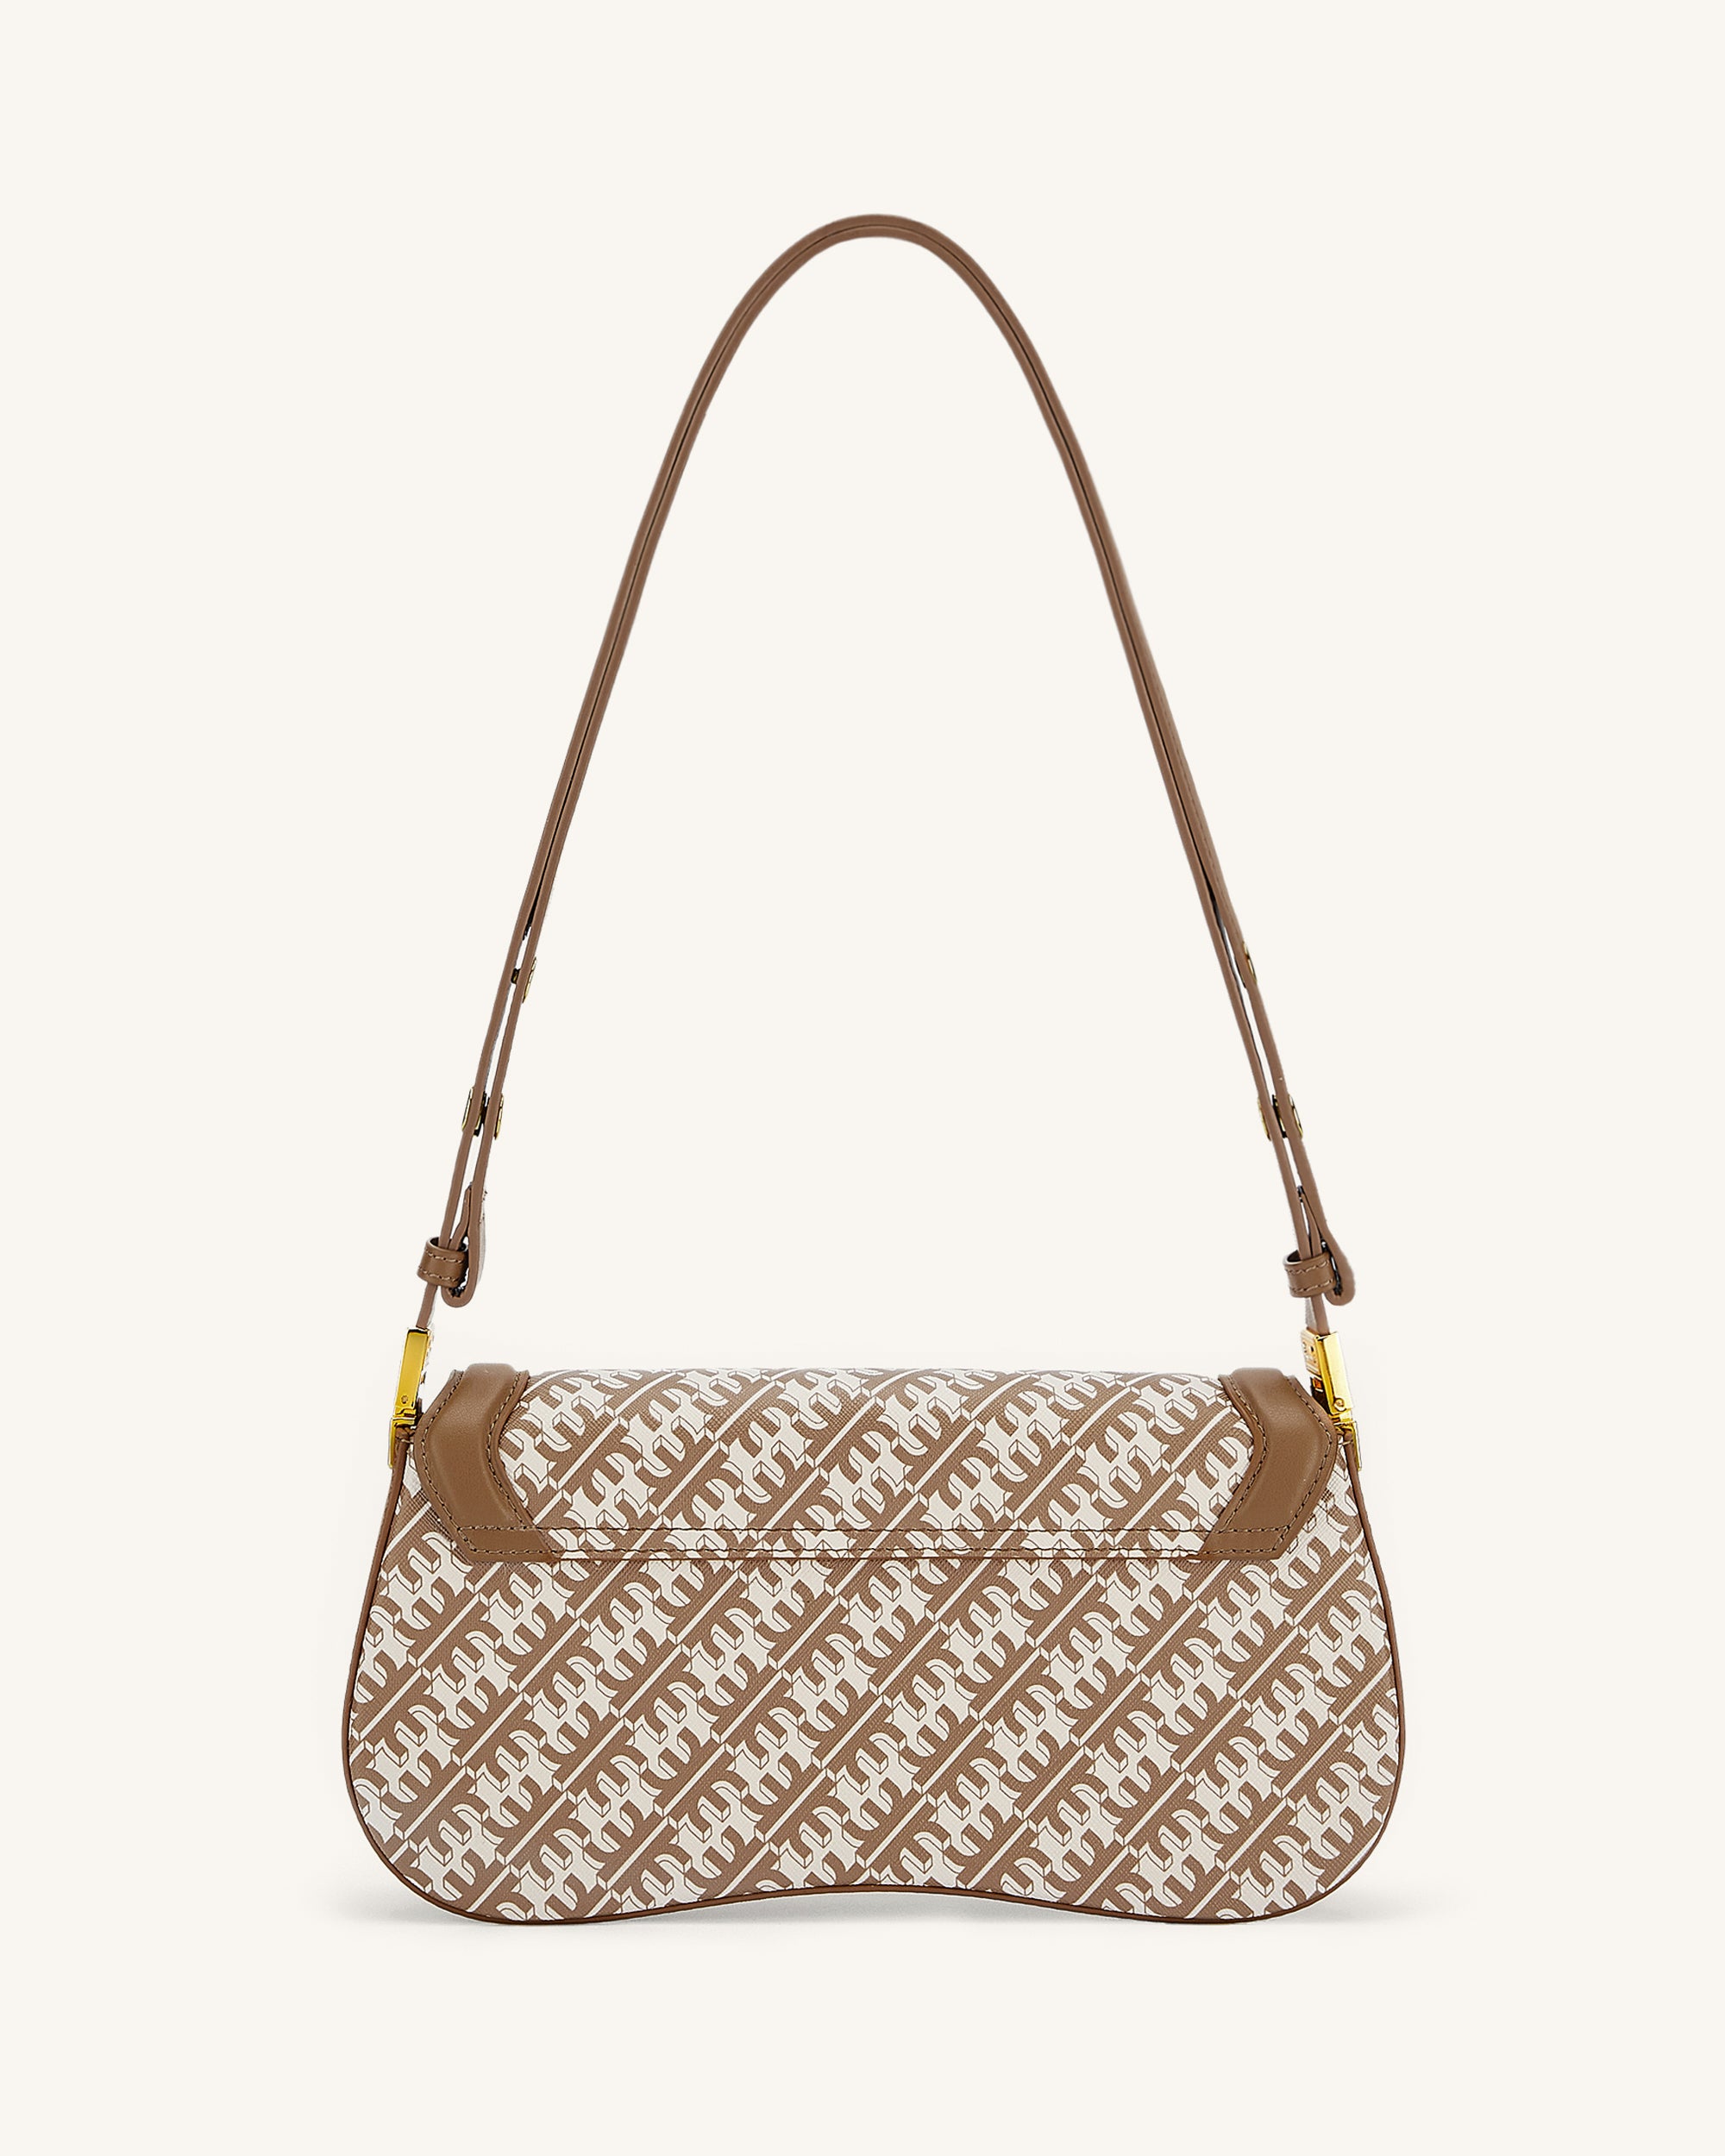 Bonhams : A Louis Vuitton large monogram plastic beach bag with